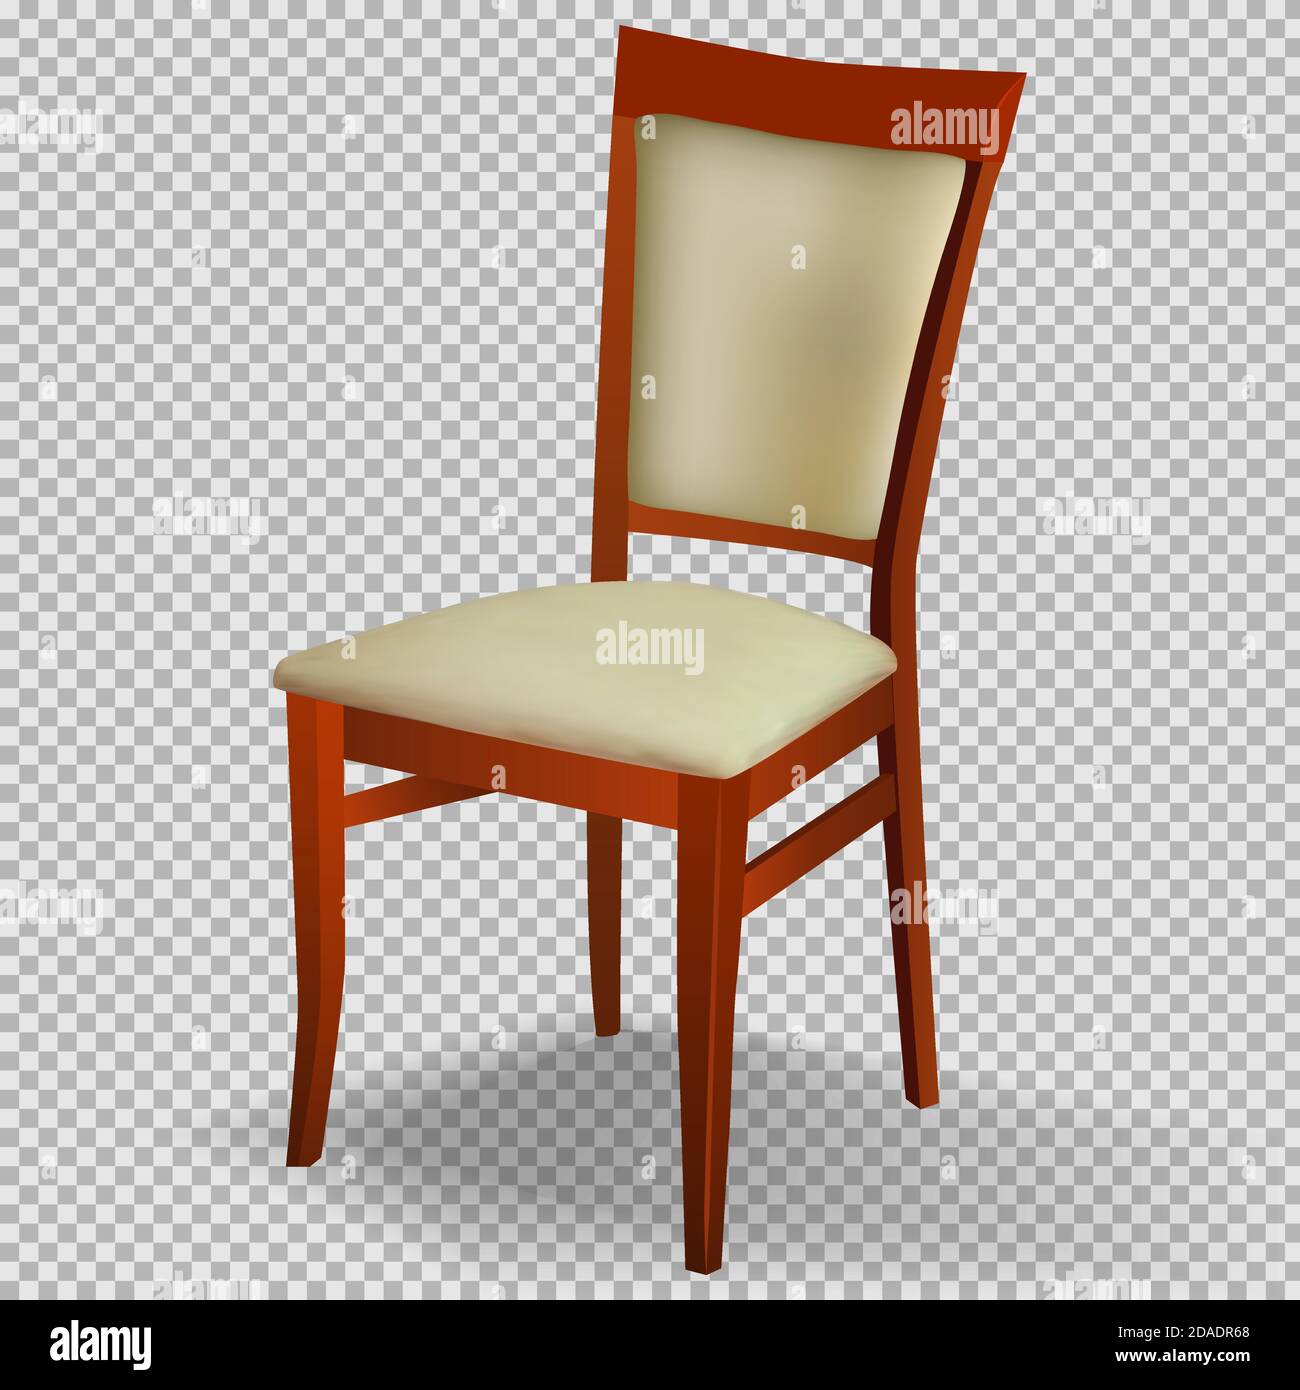 Sedia realistica con una schiena su uno sfondo trasparente.oggetto vettoriale isolato. Illustrazione Vettoriale